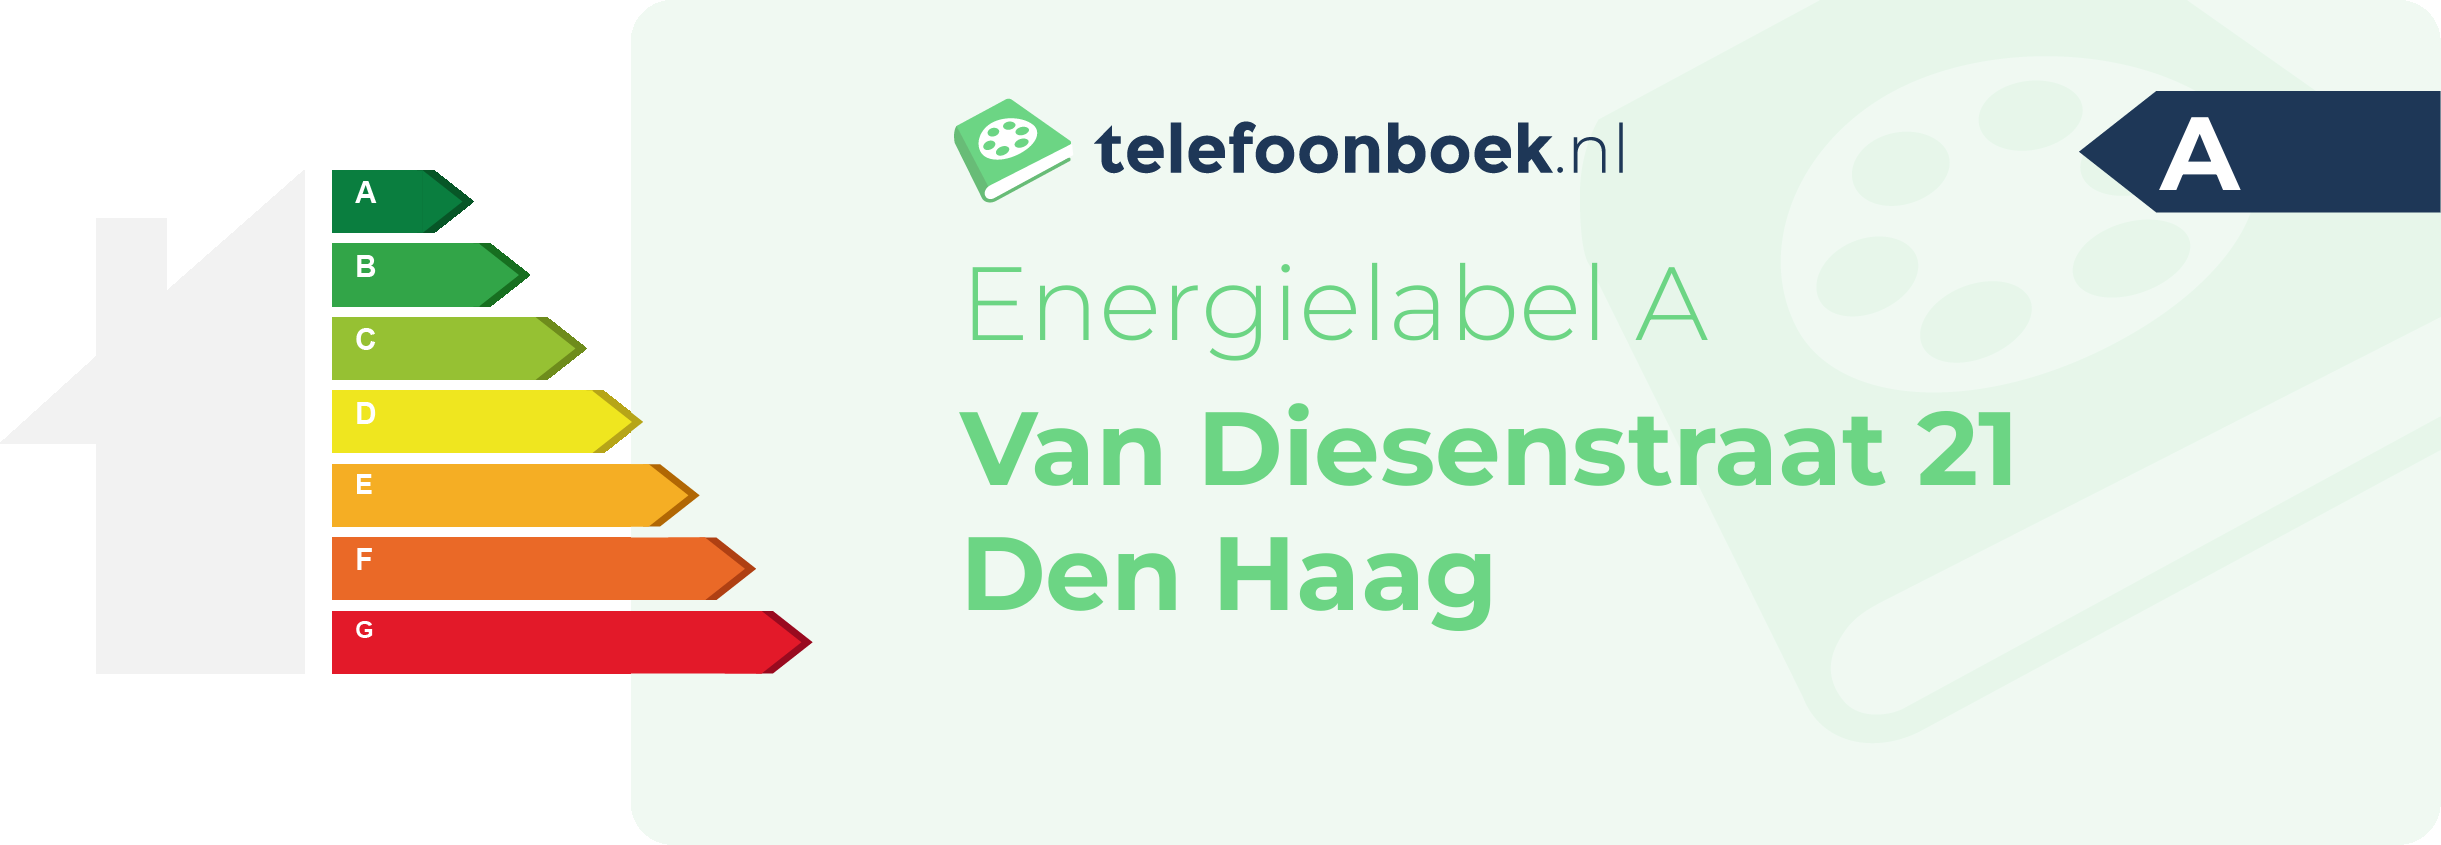 Energielabel Van Diesenstraat 21 Den Haag